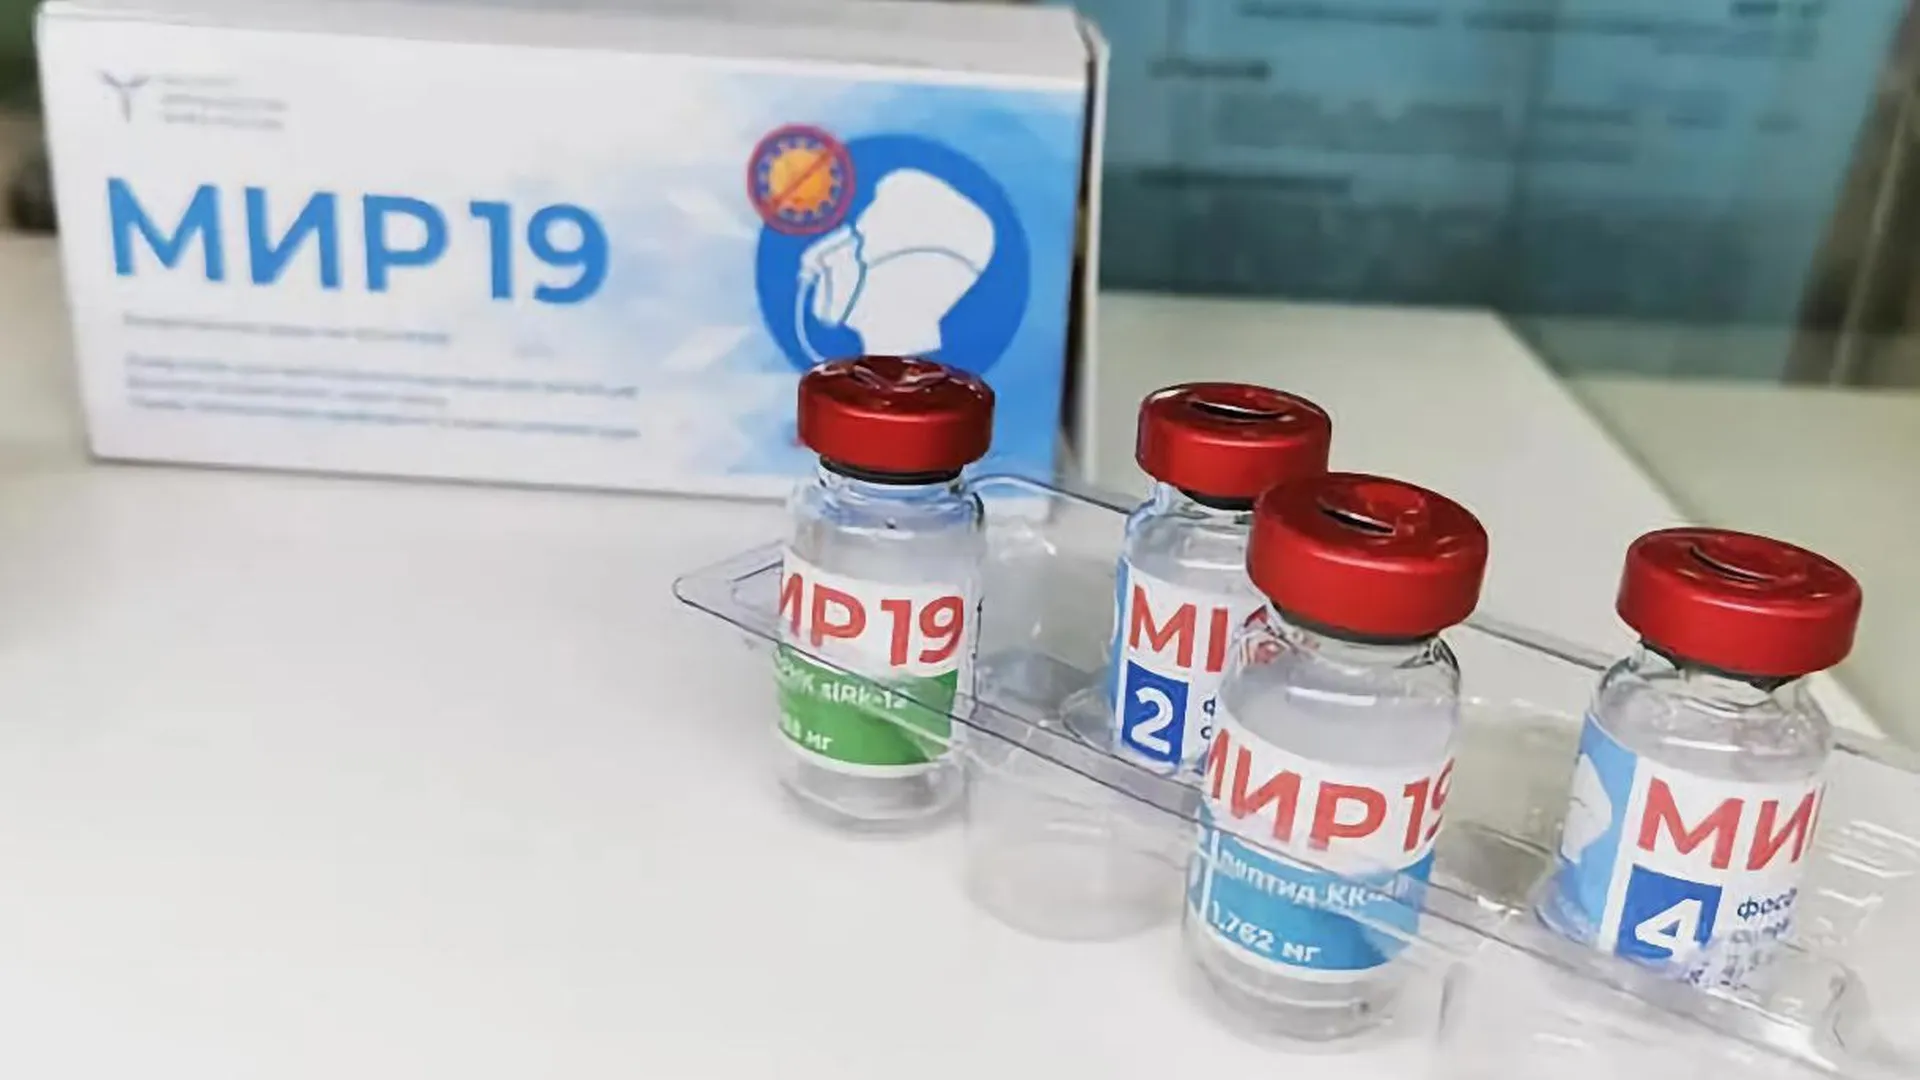 Российский препарат от COVID «Мир 19» появится в аптеках к концу мая